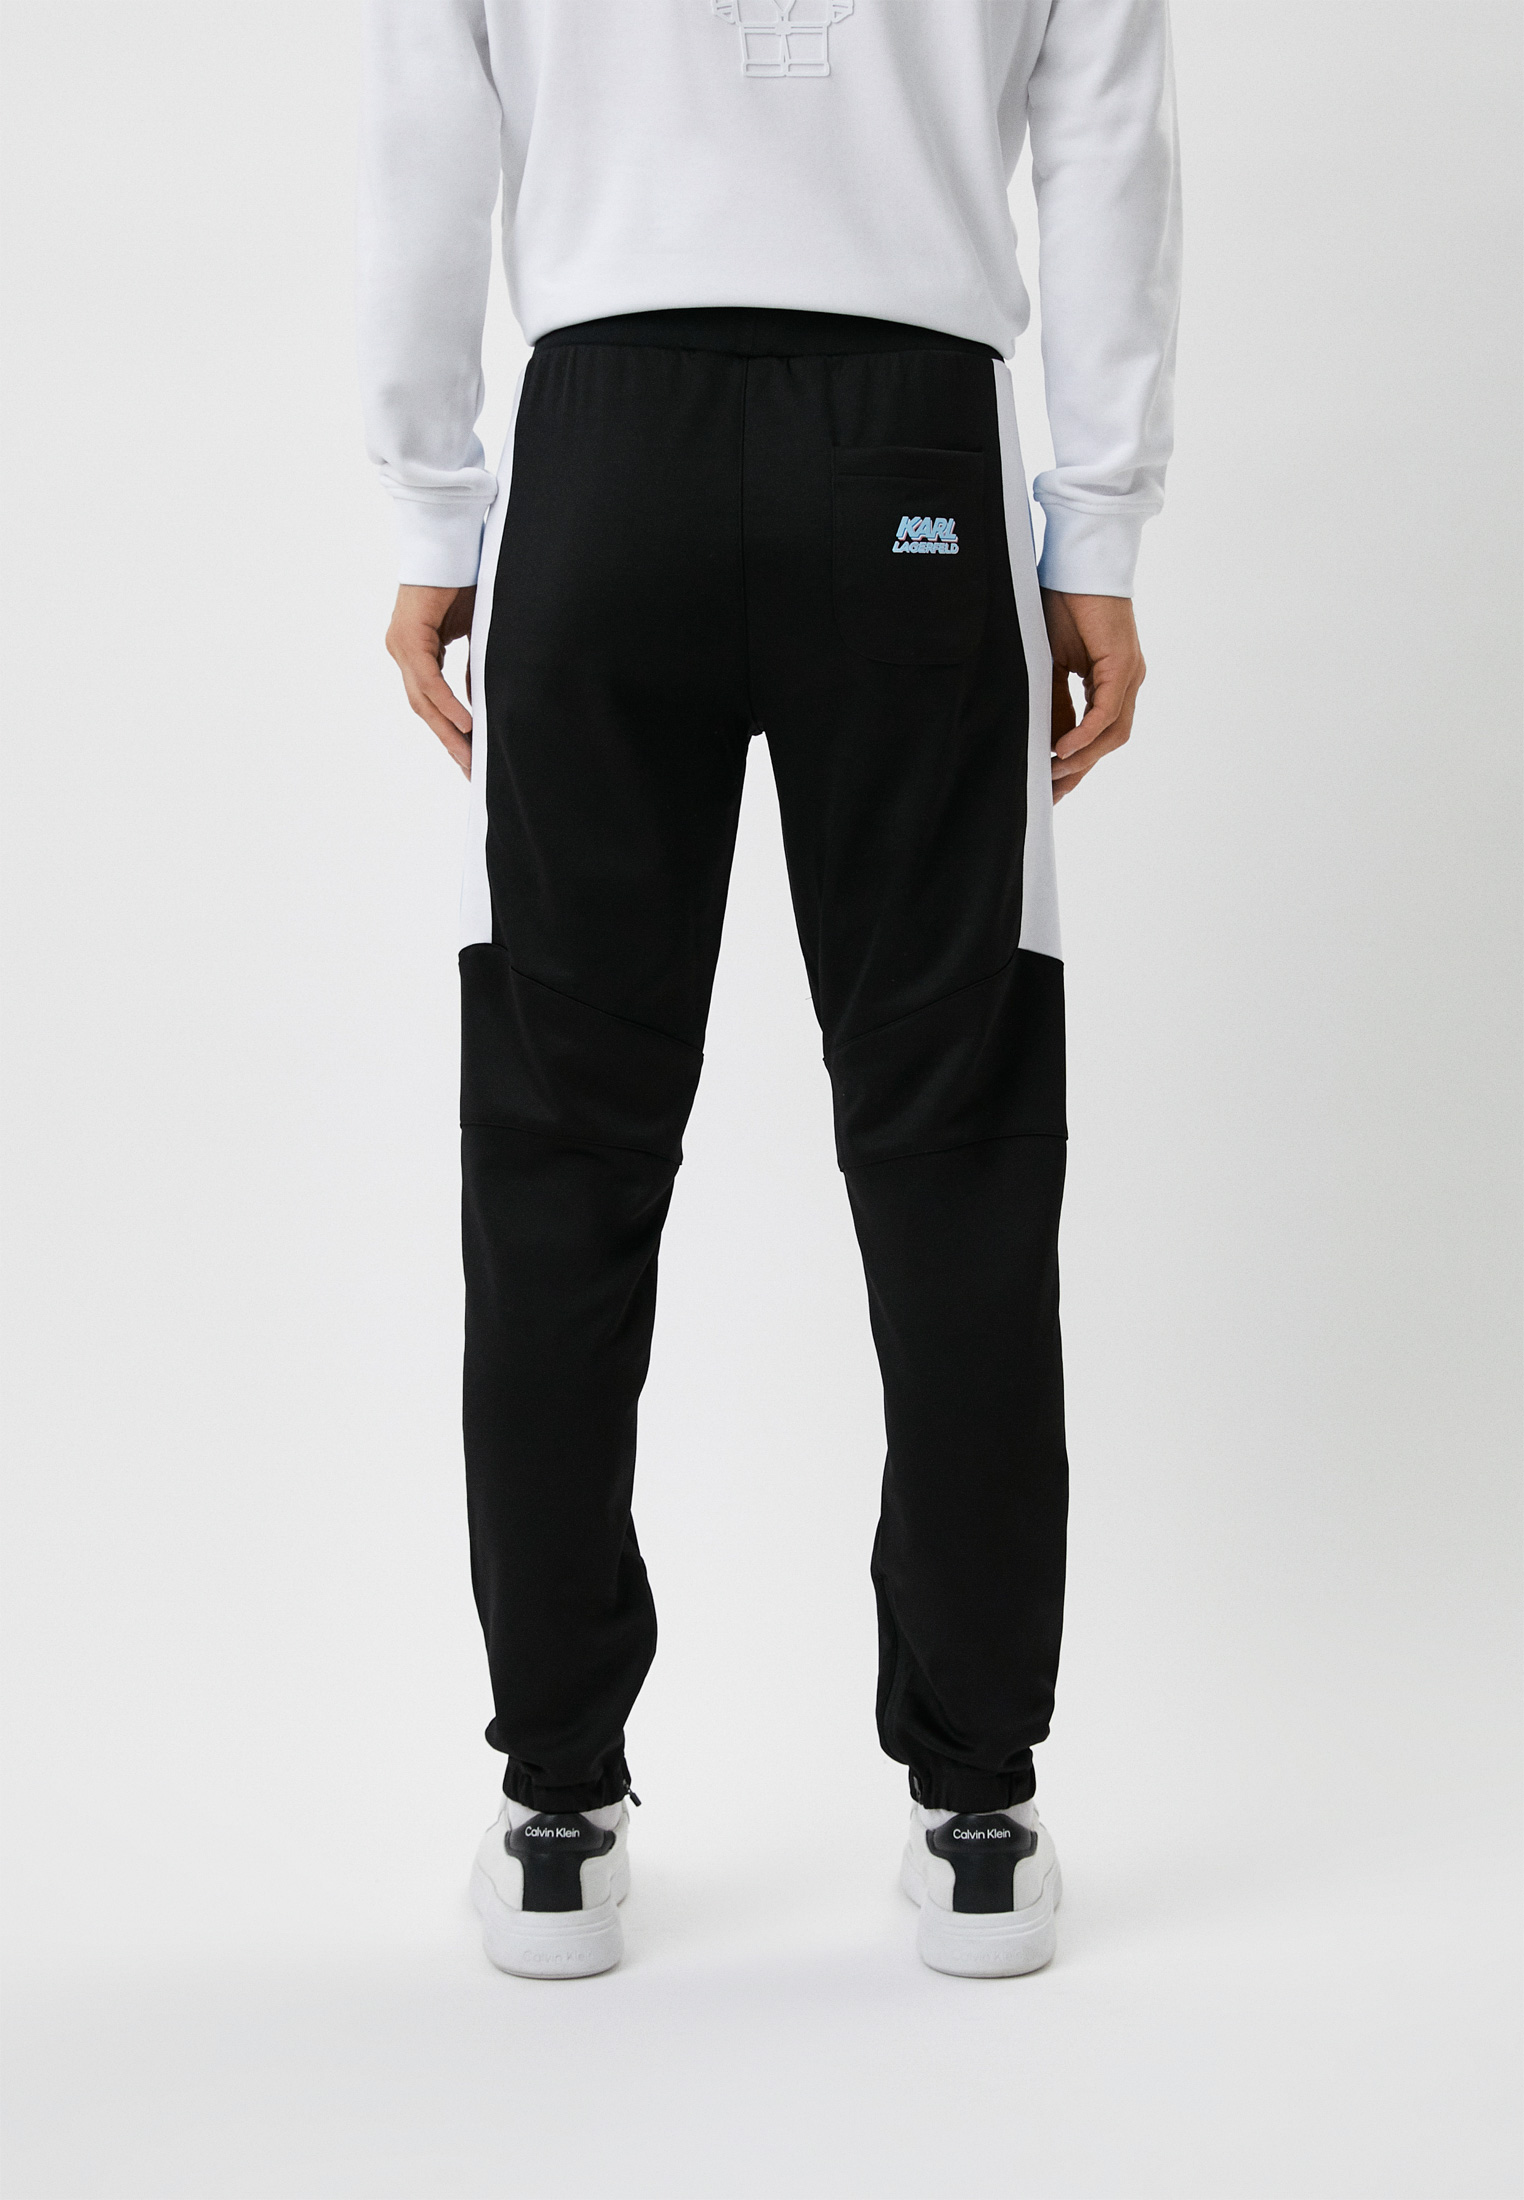 Мужские спортивные брюки Karl Lagerfeld (Карл Лагерфельд) 705083-523905: изображение 3